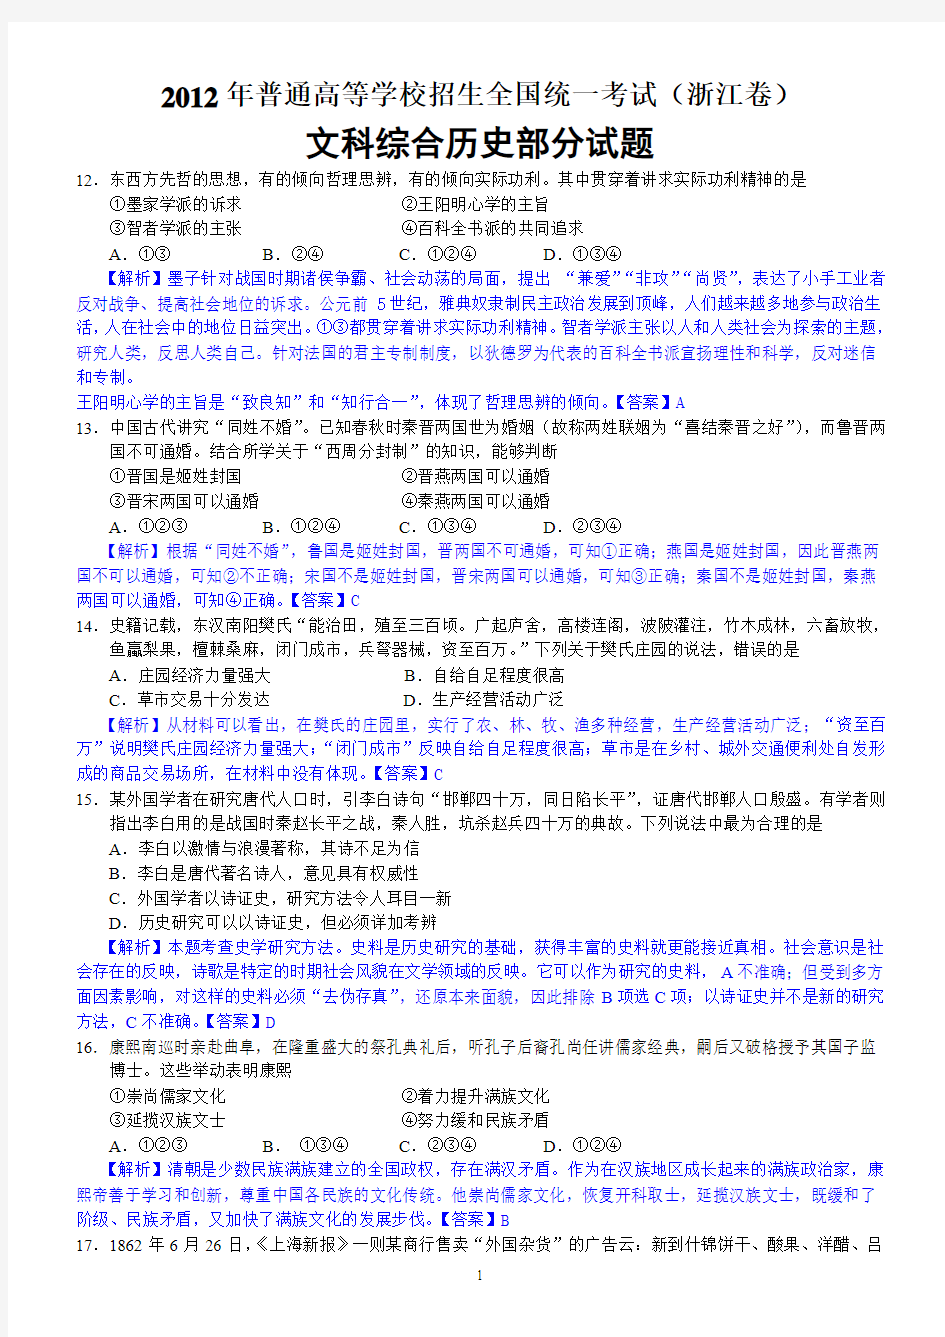 2012年高考真题——文综(浙江卷)历史解析版 (1)